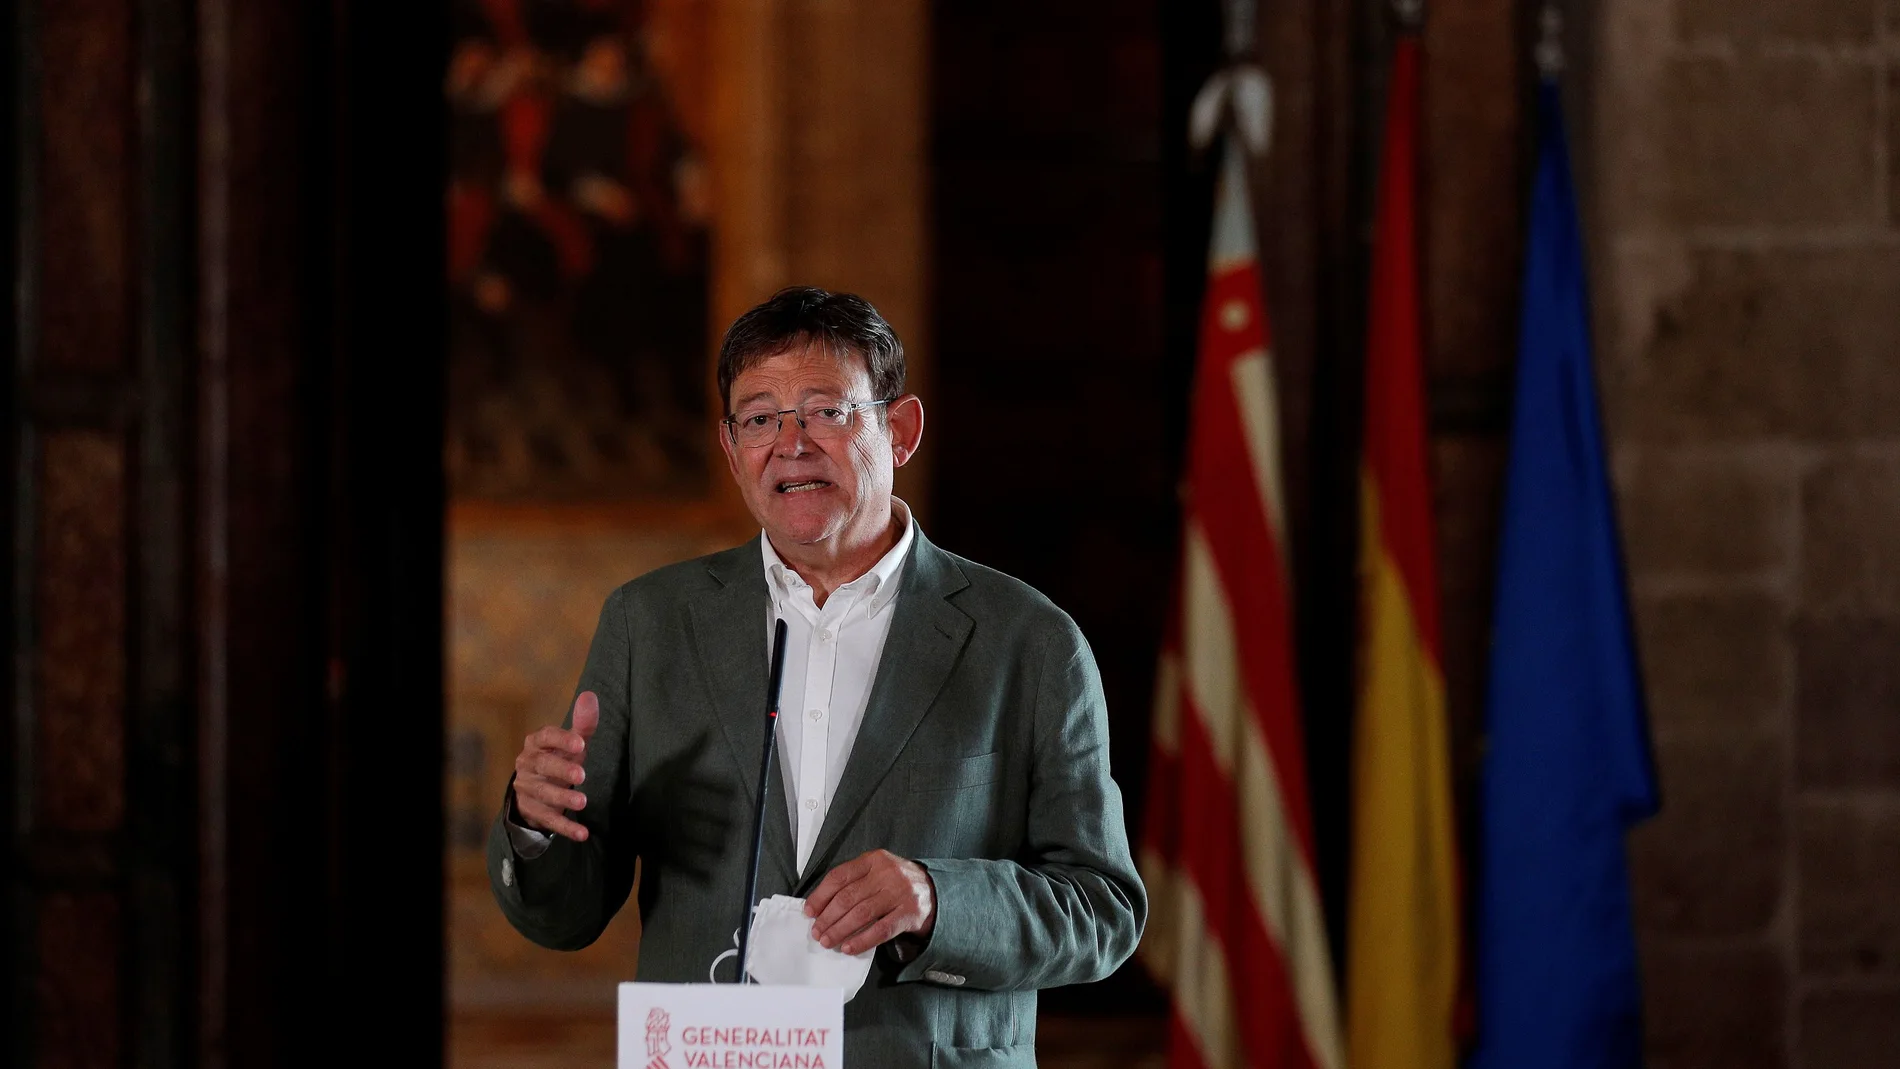 El pesident Puig mantiene una reunión telemática con la consellera Barceló